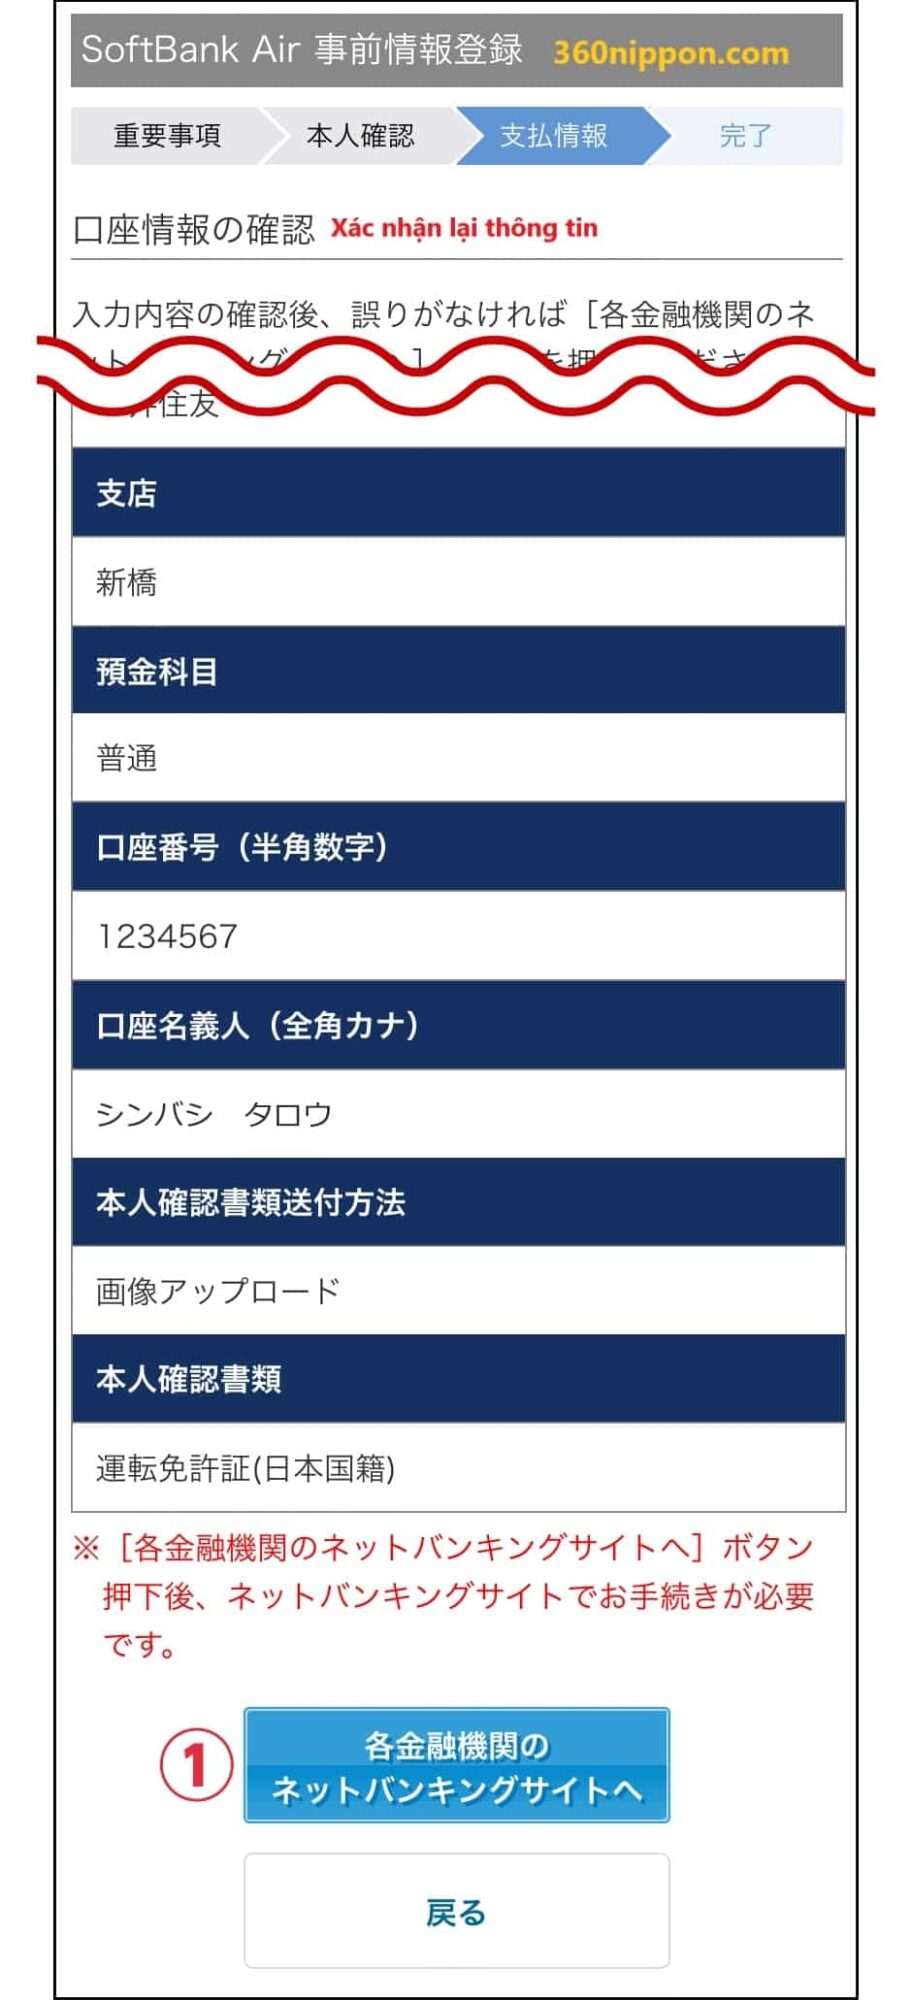 Hướng dẫn cách tự đăng ký wifi cố định softbank ở Nhật 124